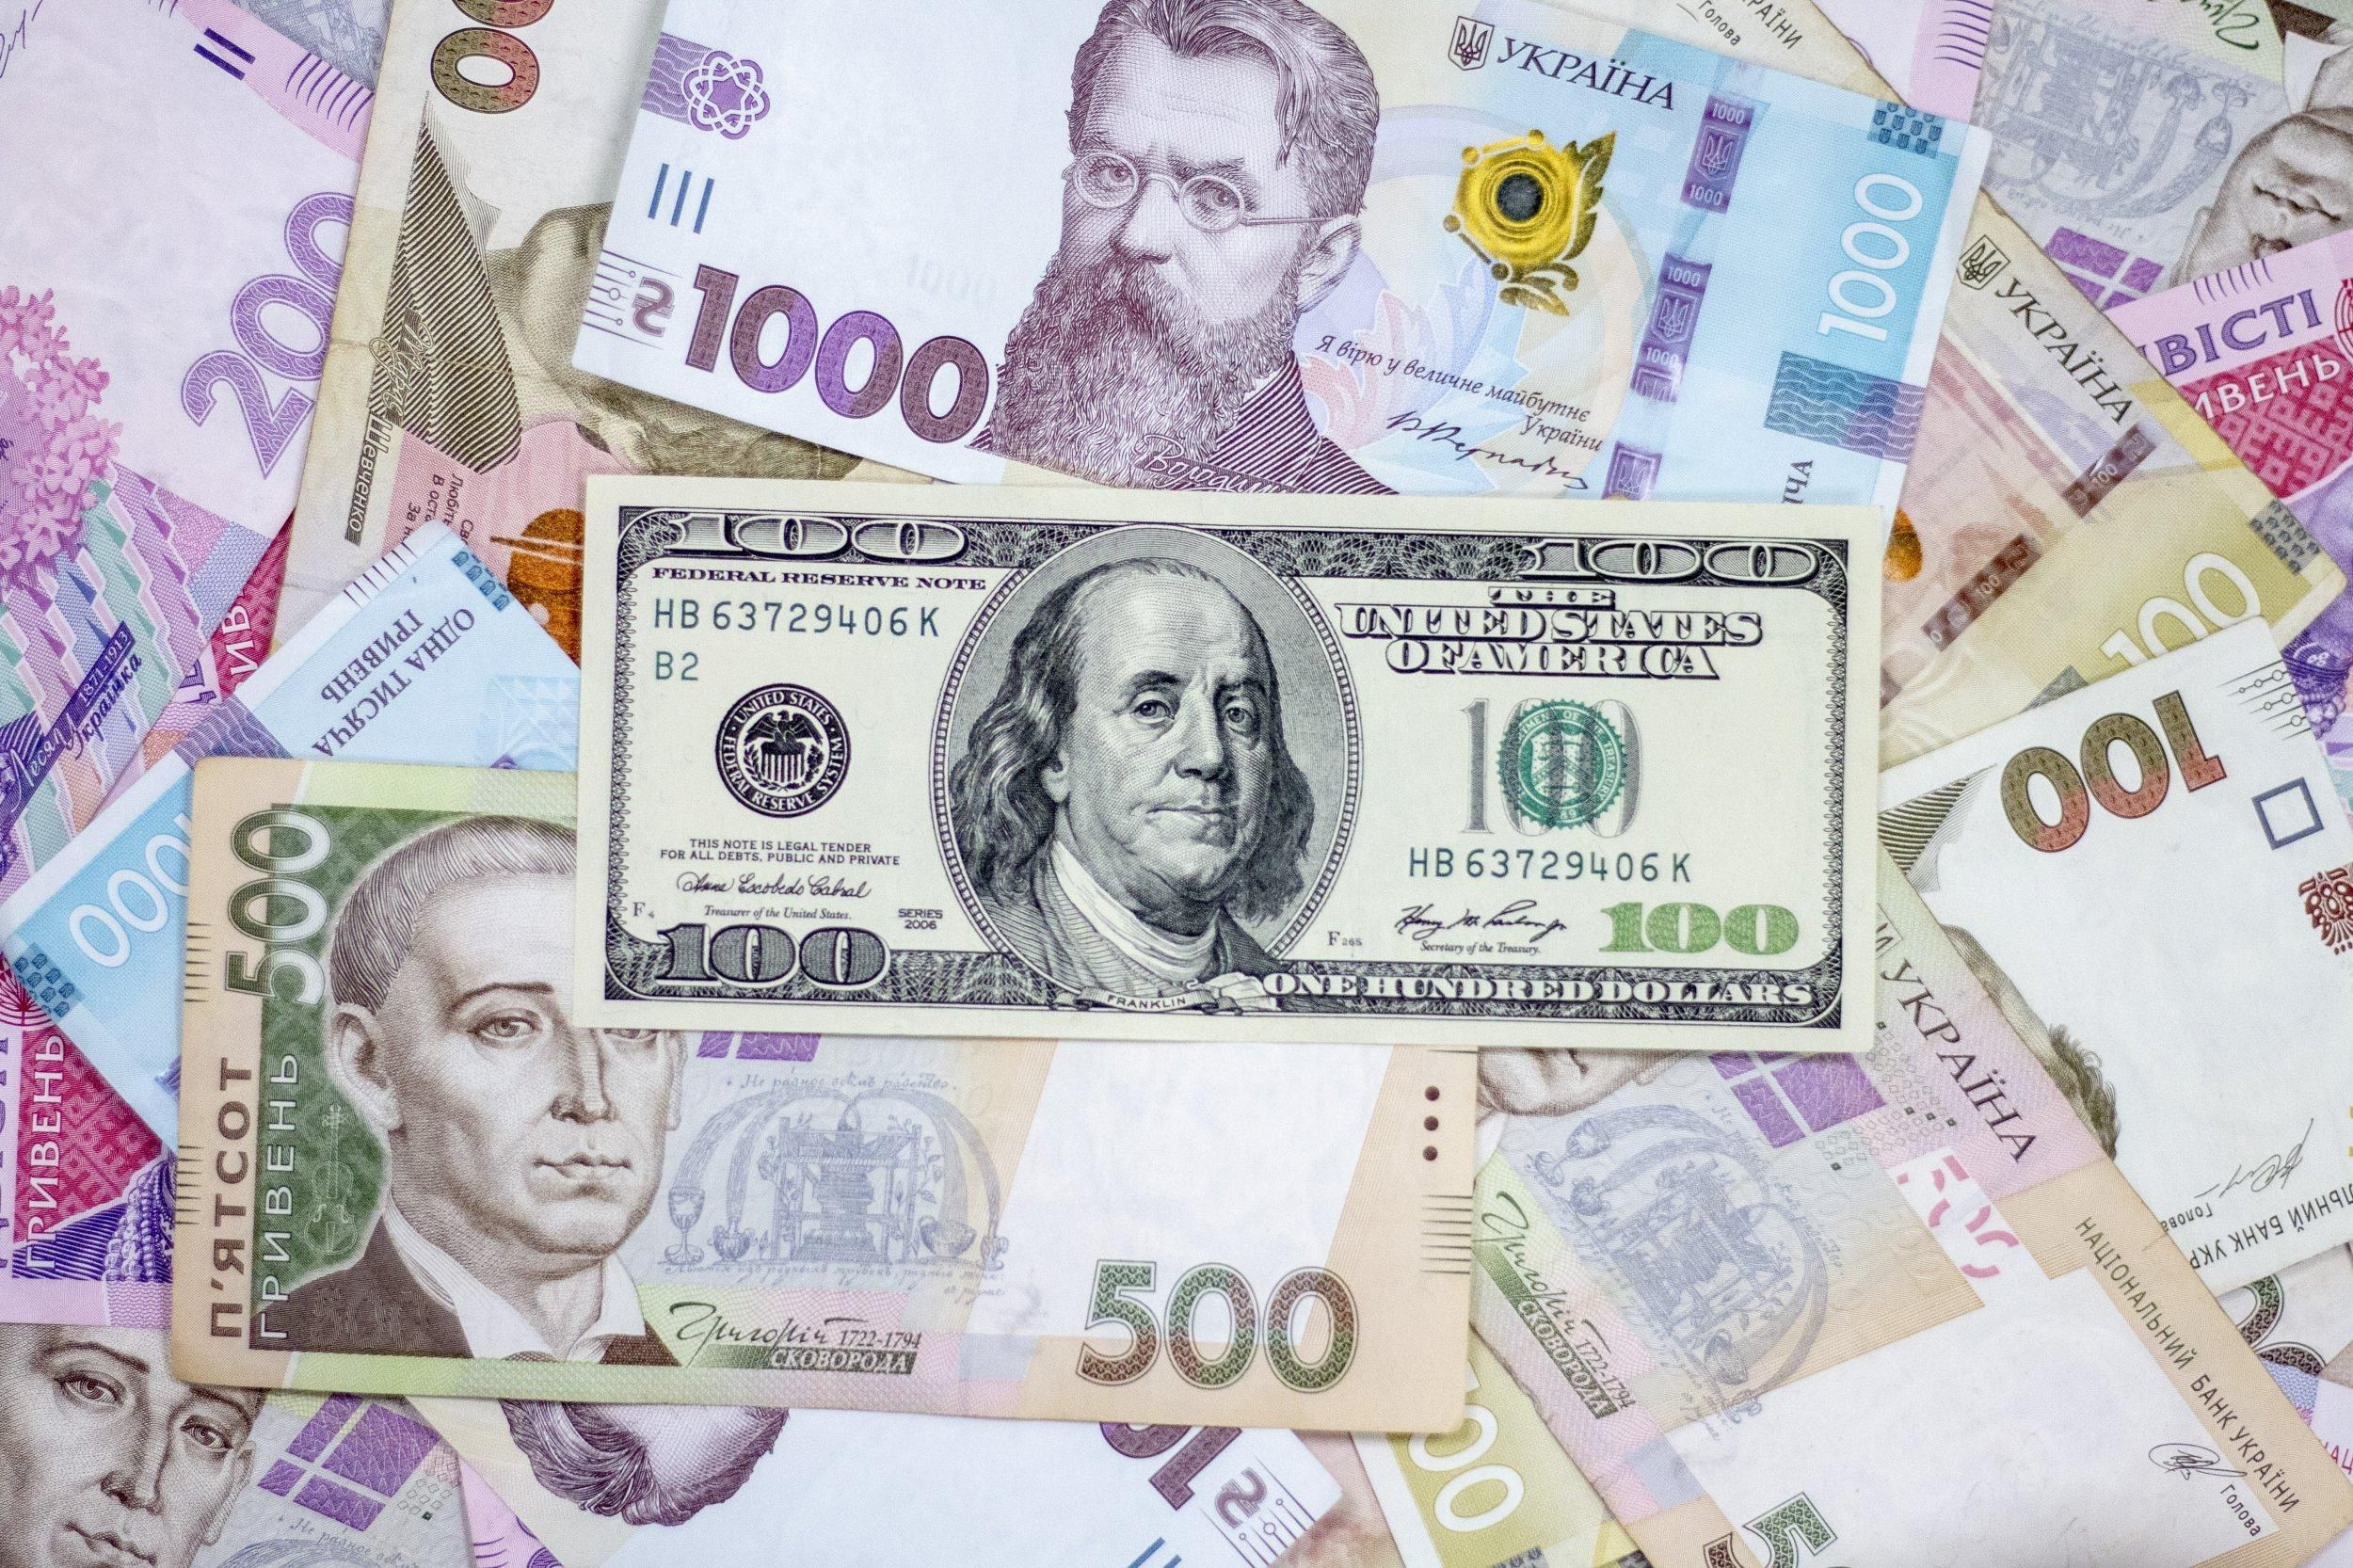 Українська економіка може скоротитись щонайменше на 10% у 2022 році: оцінка МВФ - Економіка